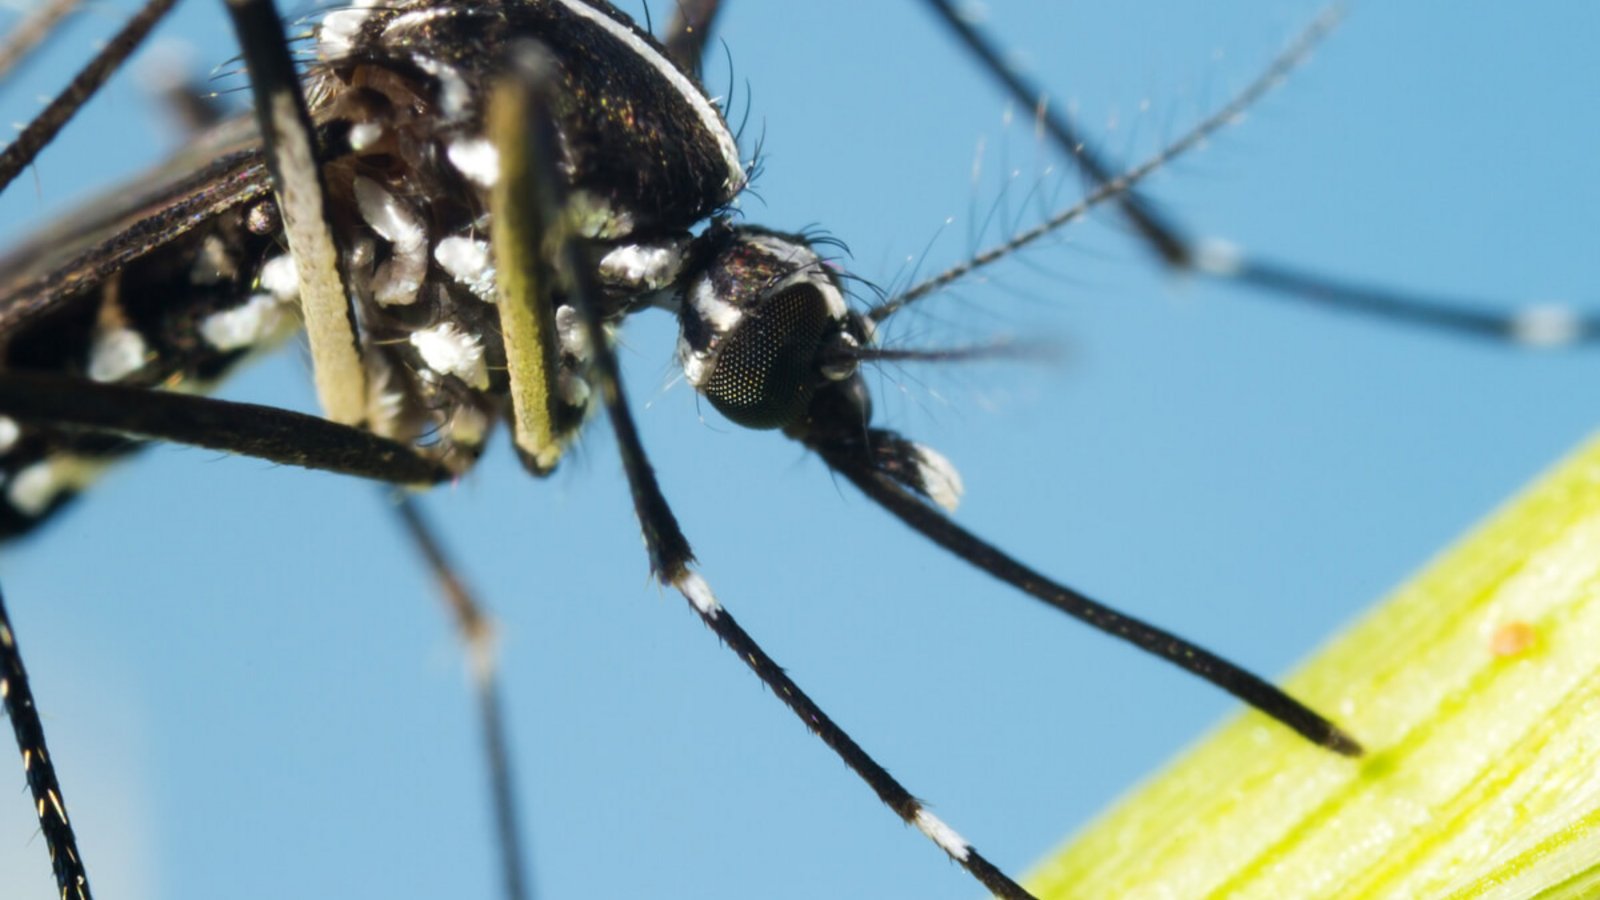 Der Mückenatlas verfolgt die Verbreitung von eingeführten Mückenarten in Deutschland. So können Sie Mücken einschicken und bestimmen lassen.Foto: InsectWorld / Shutterstock.com